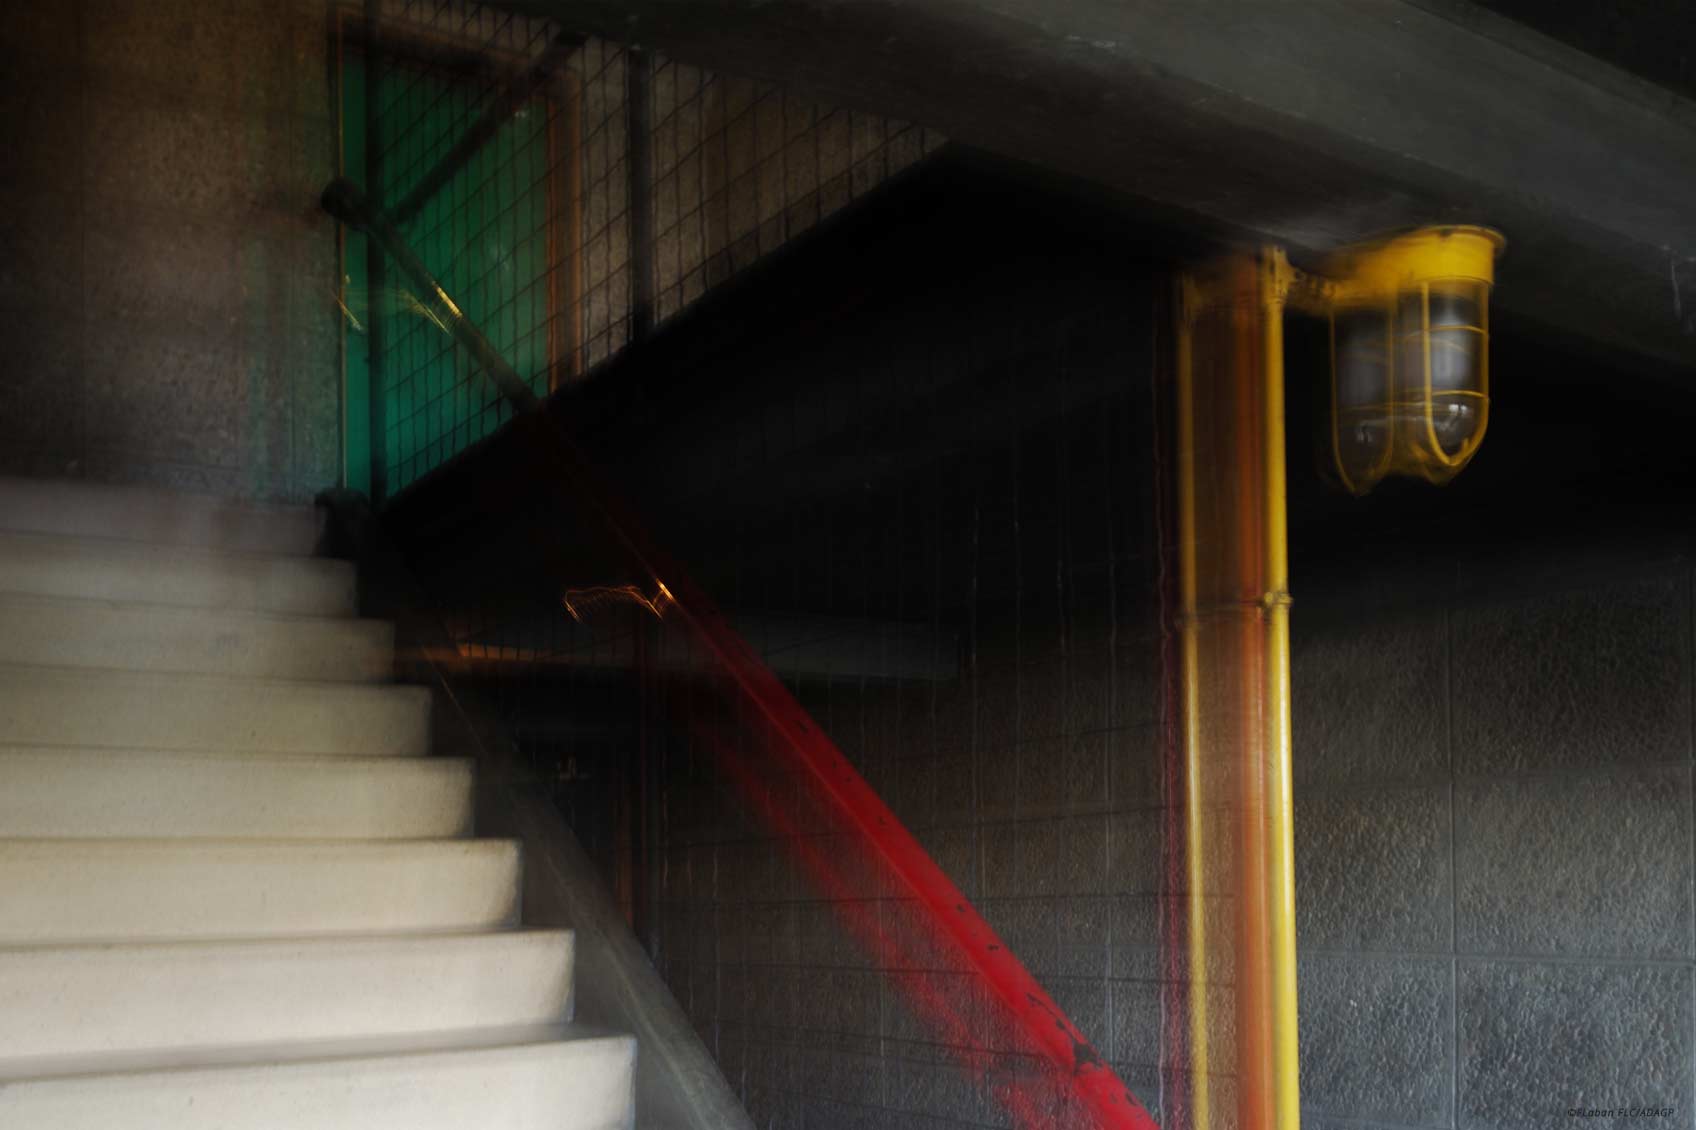 escalier couleurs le corbusier ©Frederic Laban - FLC/ADAGP